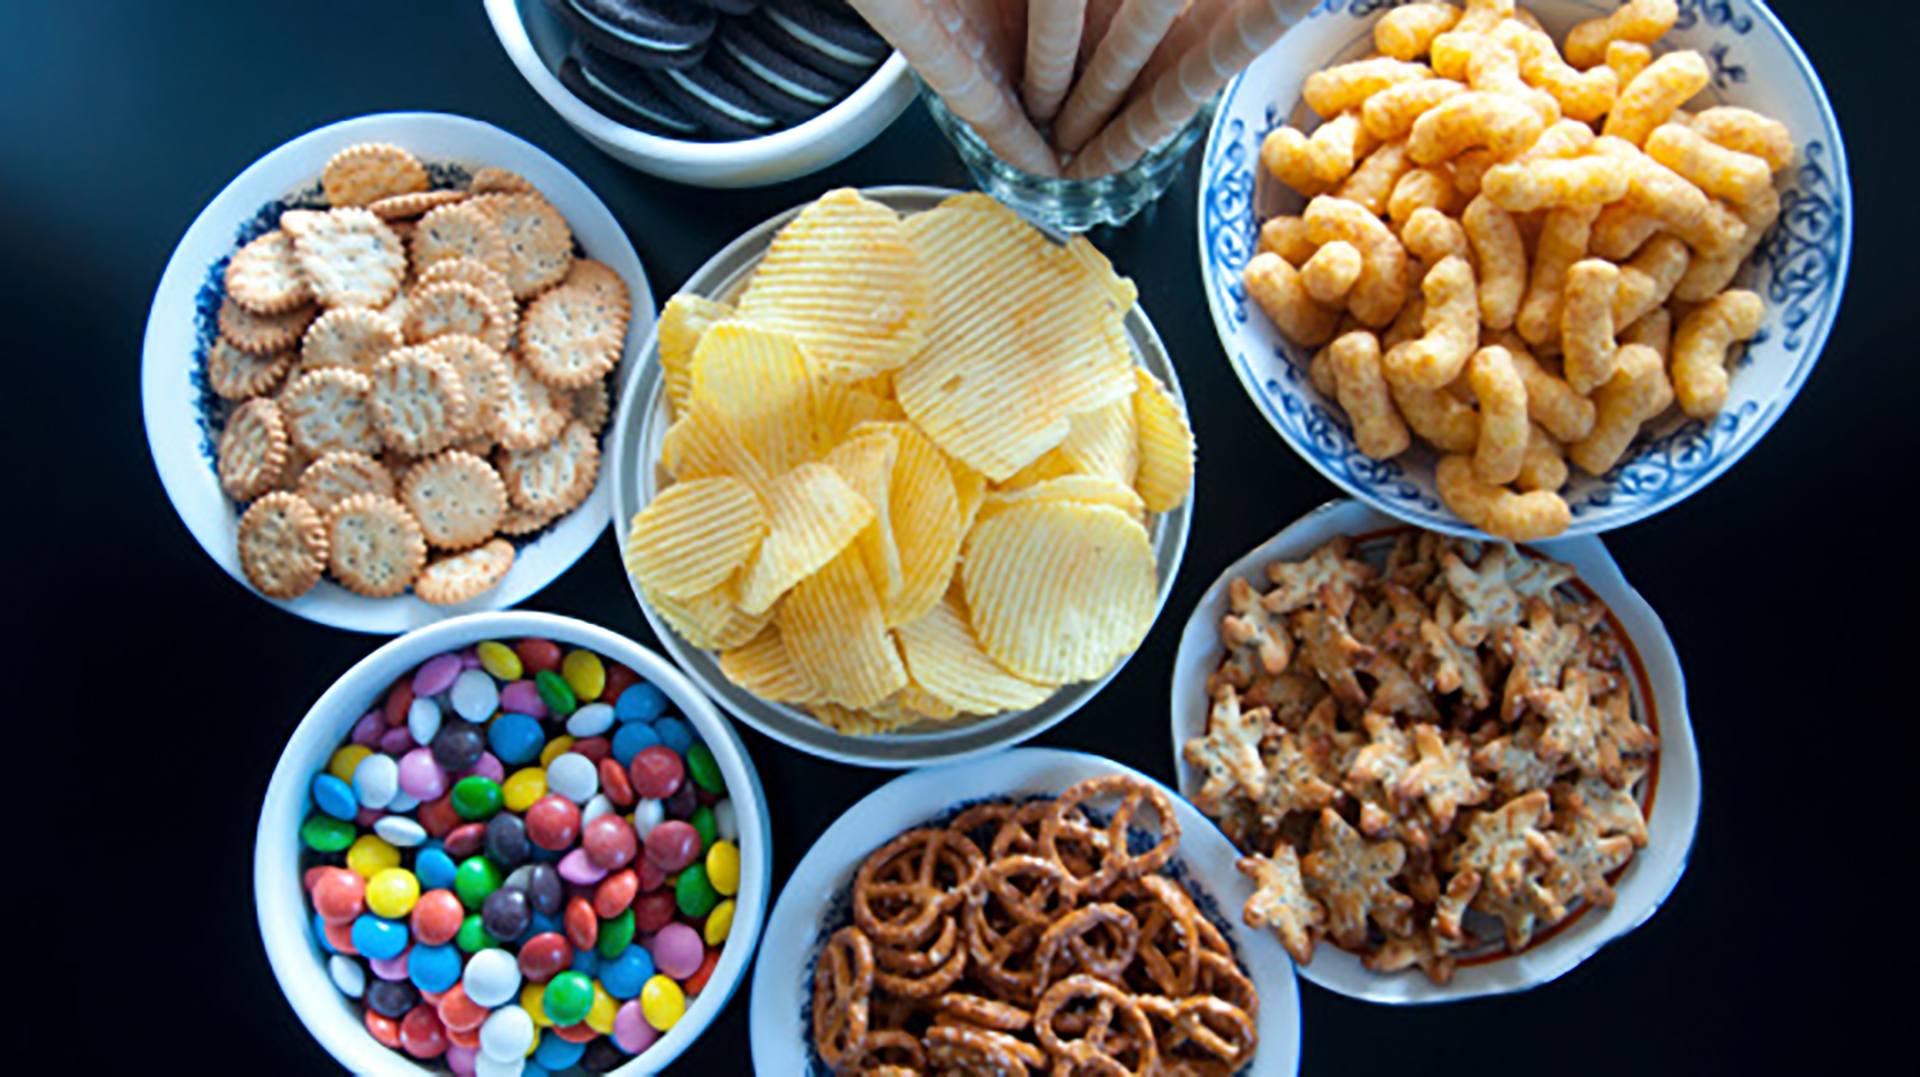 Los snacks forman parte de los alimentos ultraprocesados estudiados por la ciencia